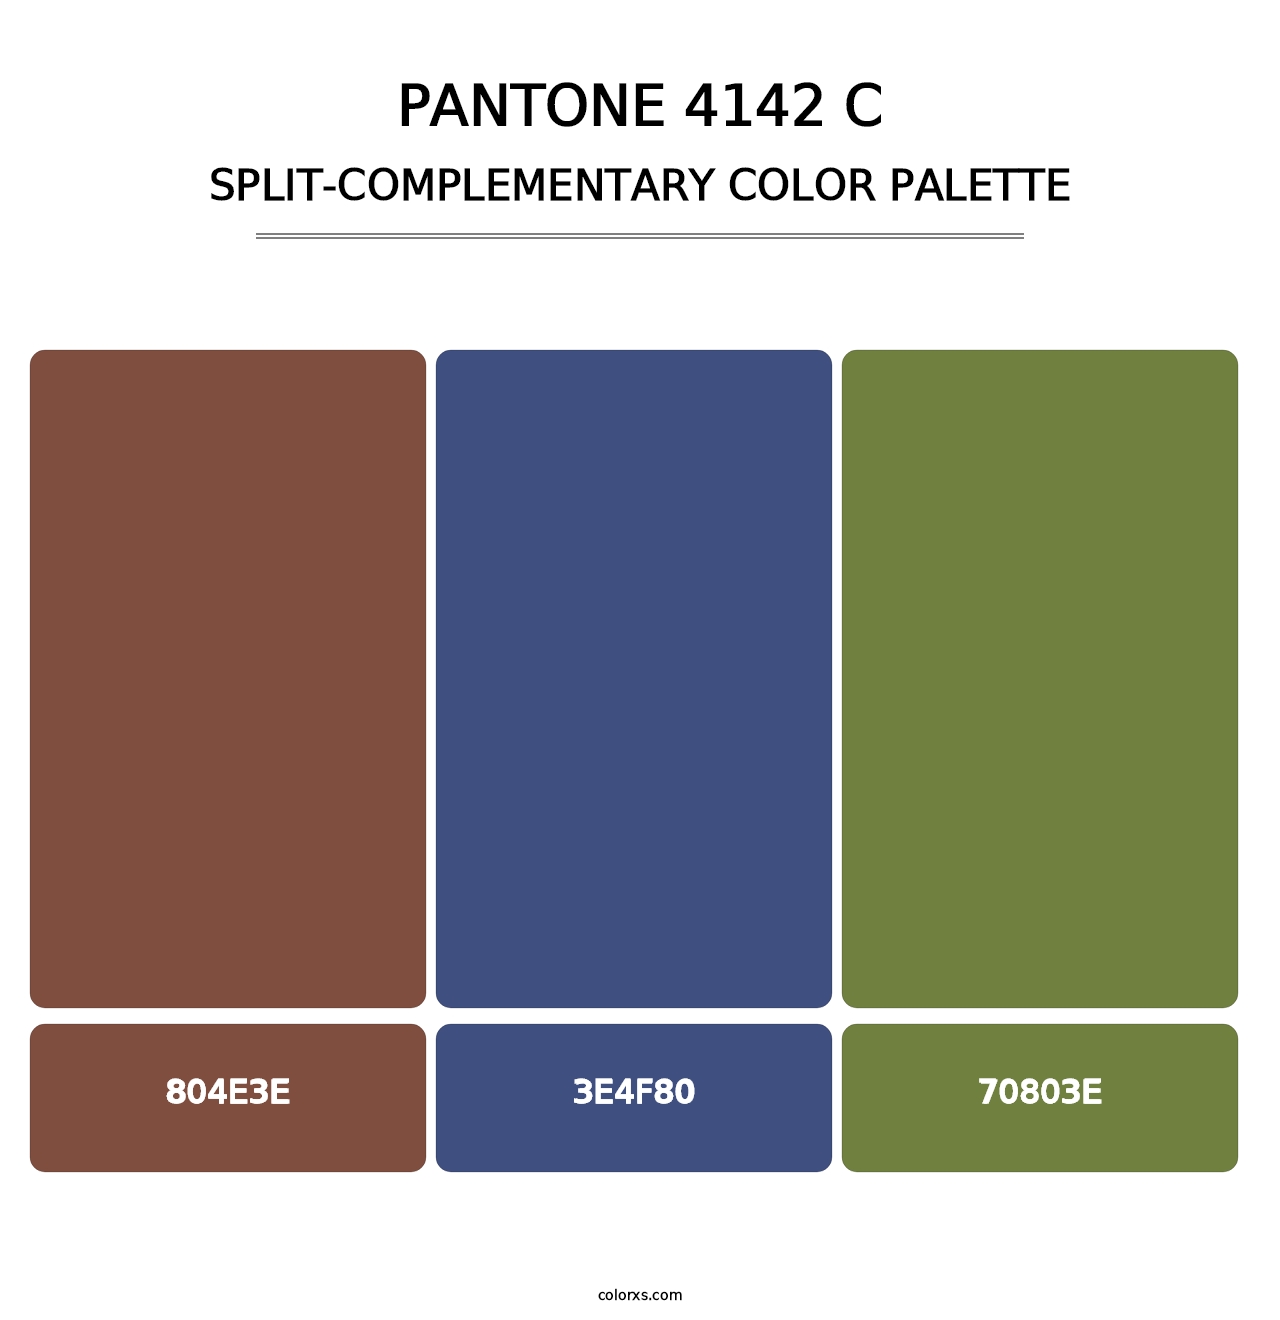 PANTONE 4142 C - Split-Complementary Color Palette